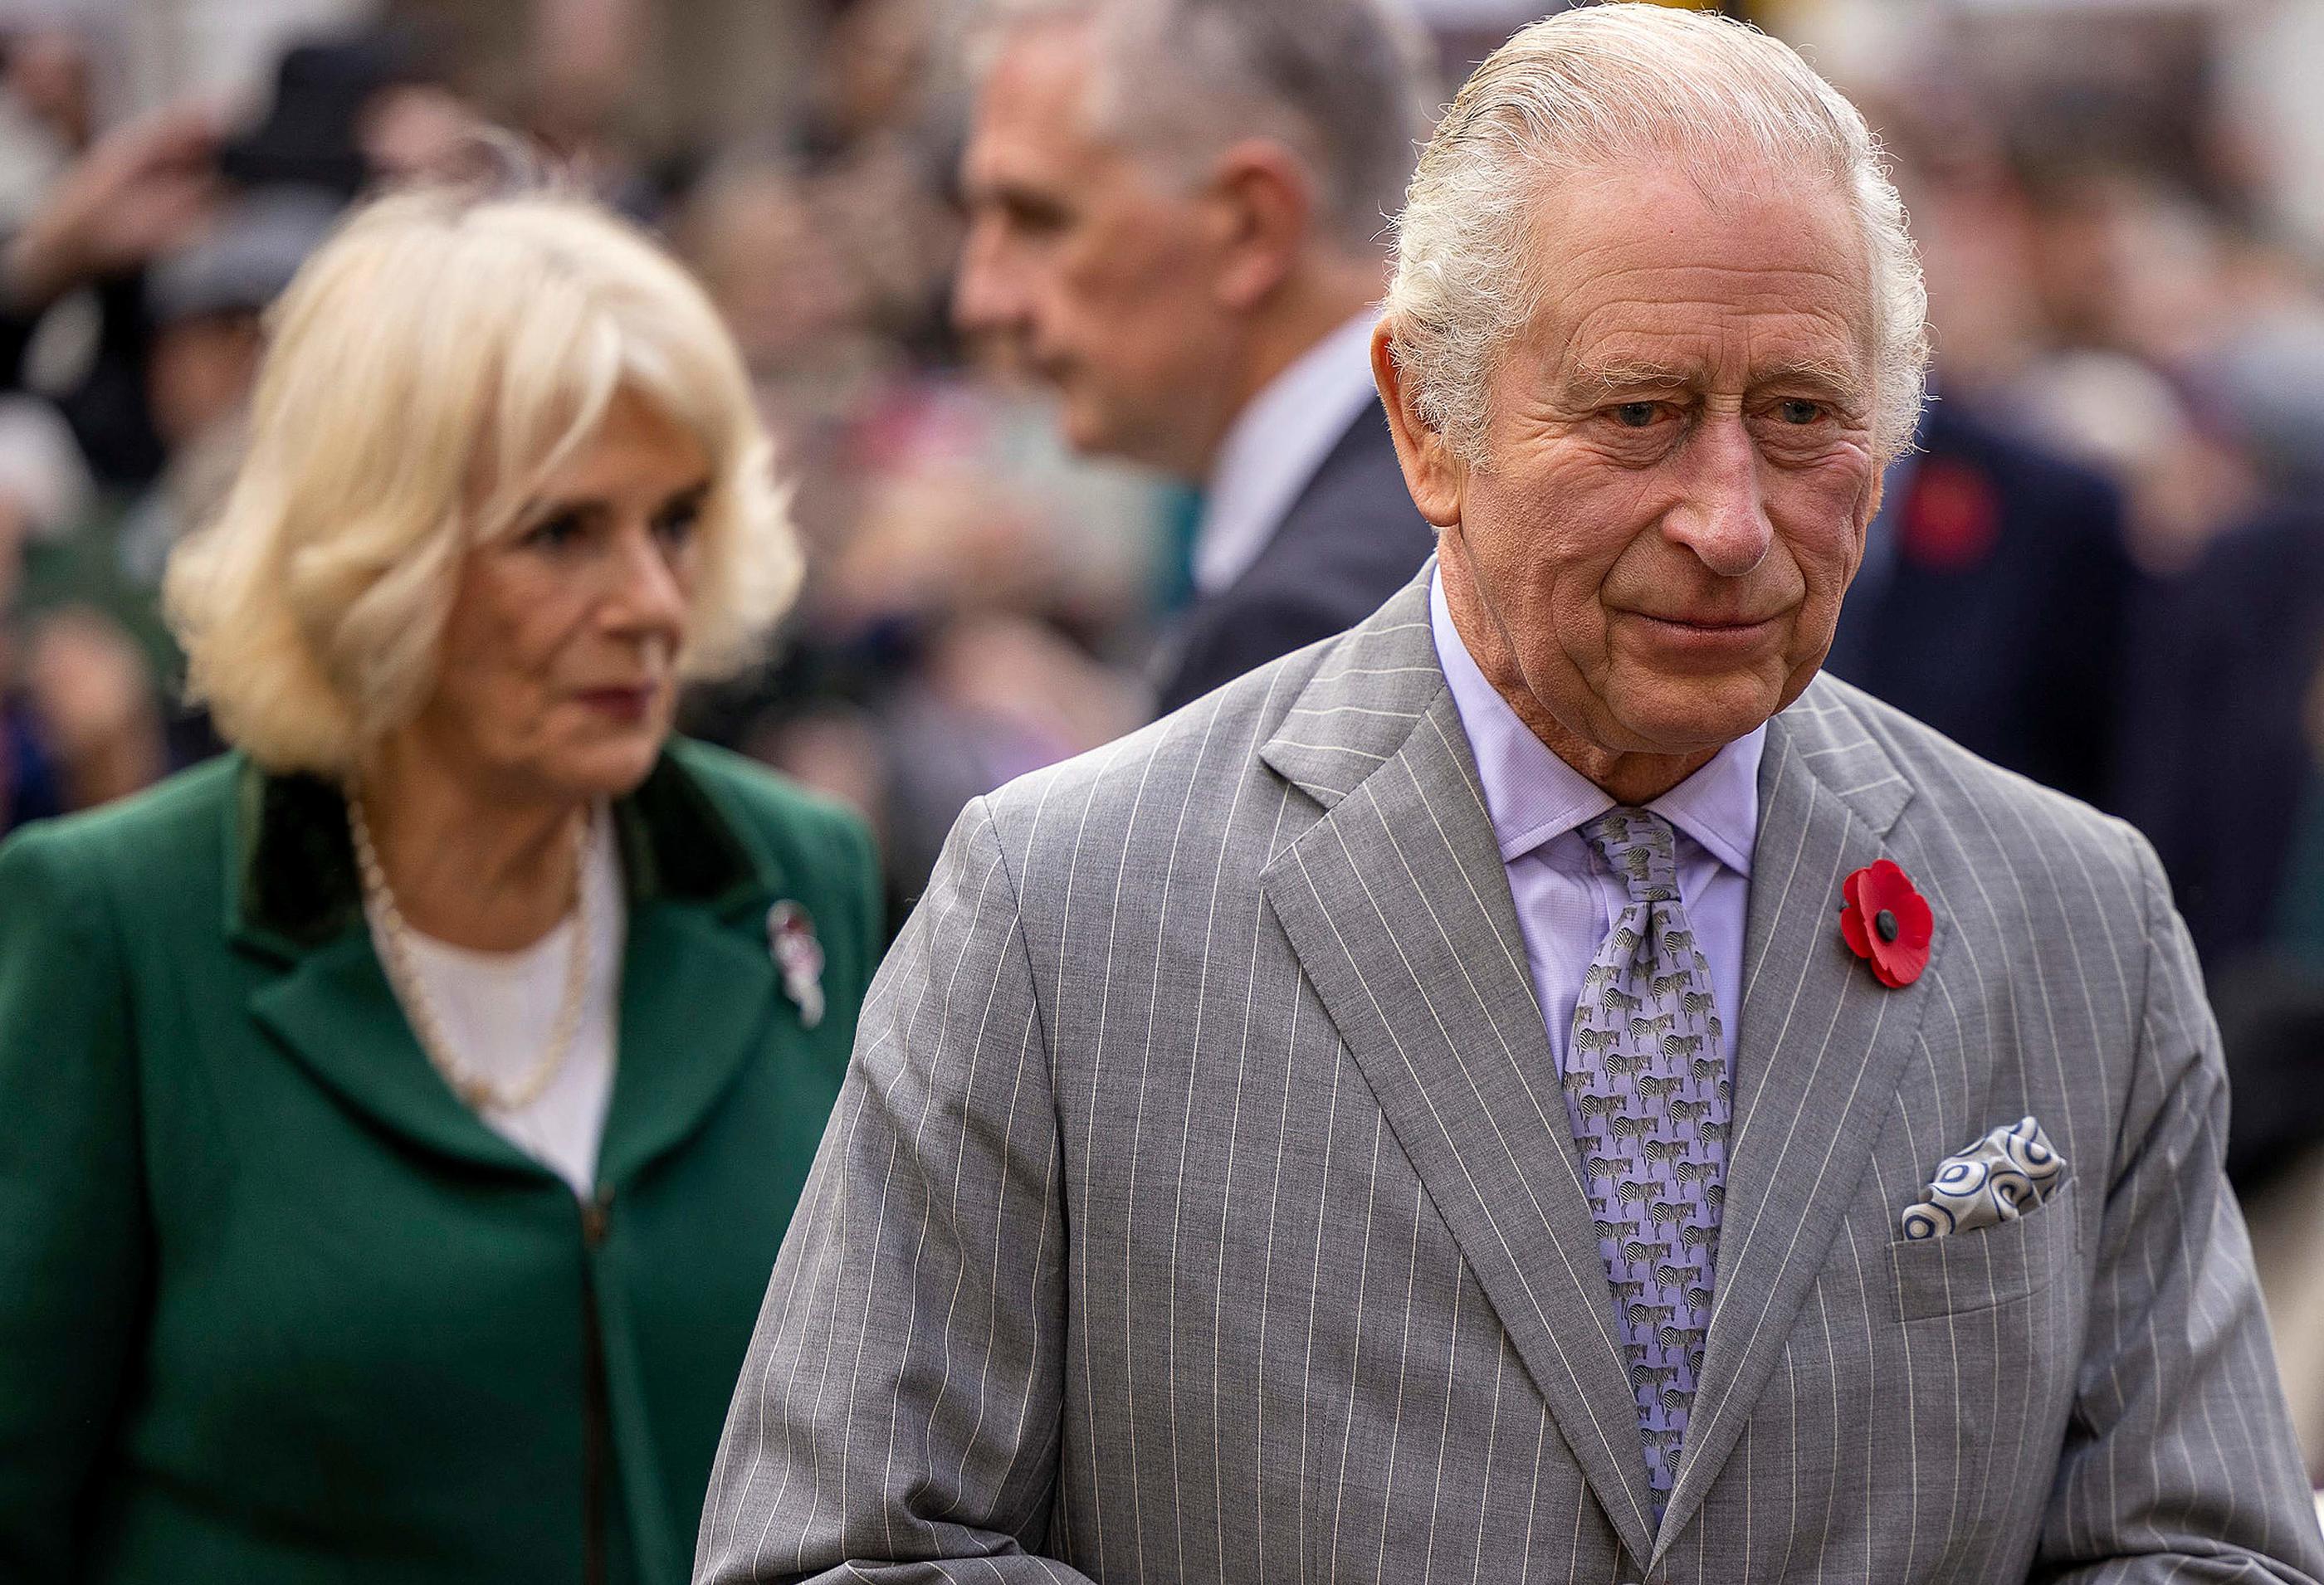 Le roi Charles III et la reine consort, ici le 9 novembre 2022, suivent de près les mouvements sociaux en France, et ont décidé de reporter ce qui devait être leur première visite officielle. AFP/Pool/James Glossop